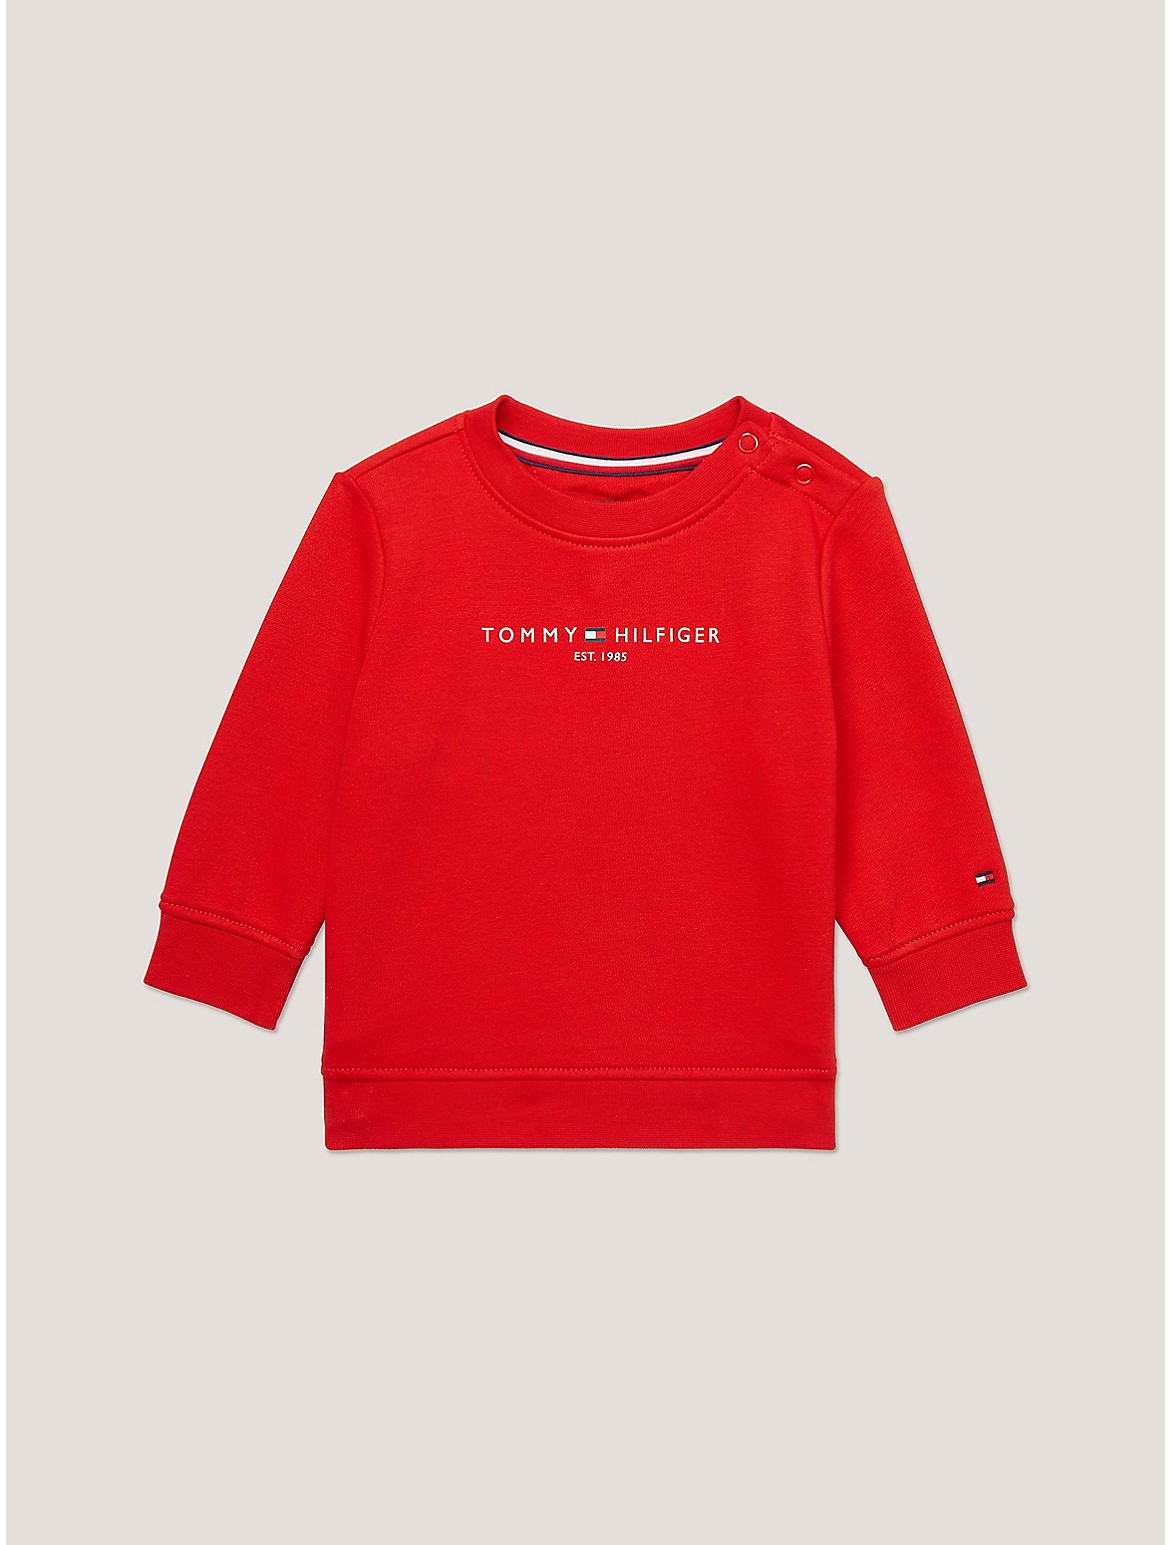 Tommy Hilfiger Boys' Babies' Tommy Logo Sweatshirt - Red - 6-9M